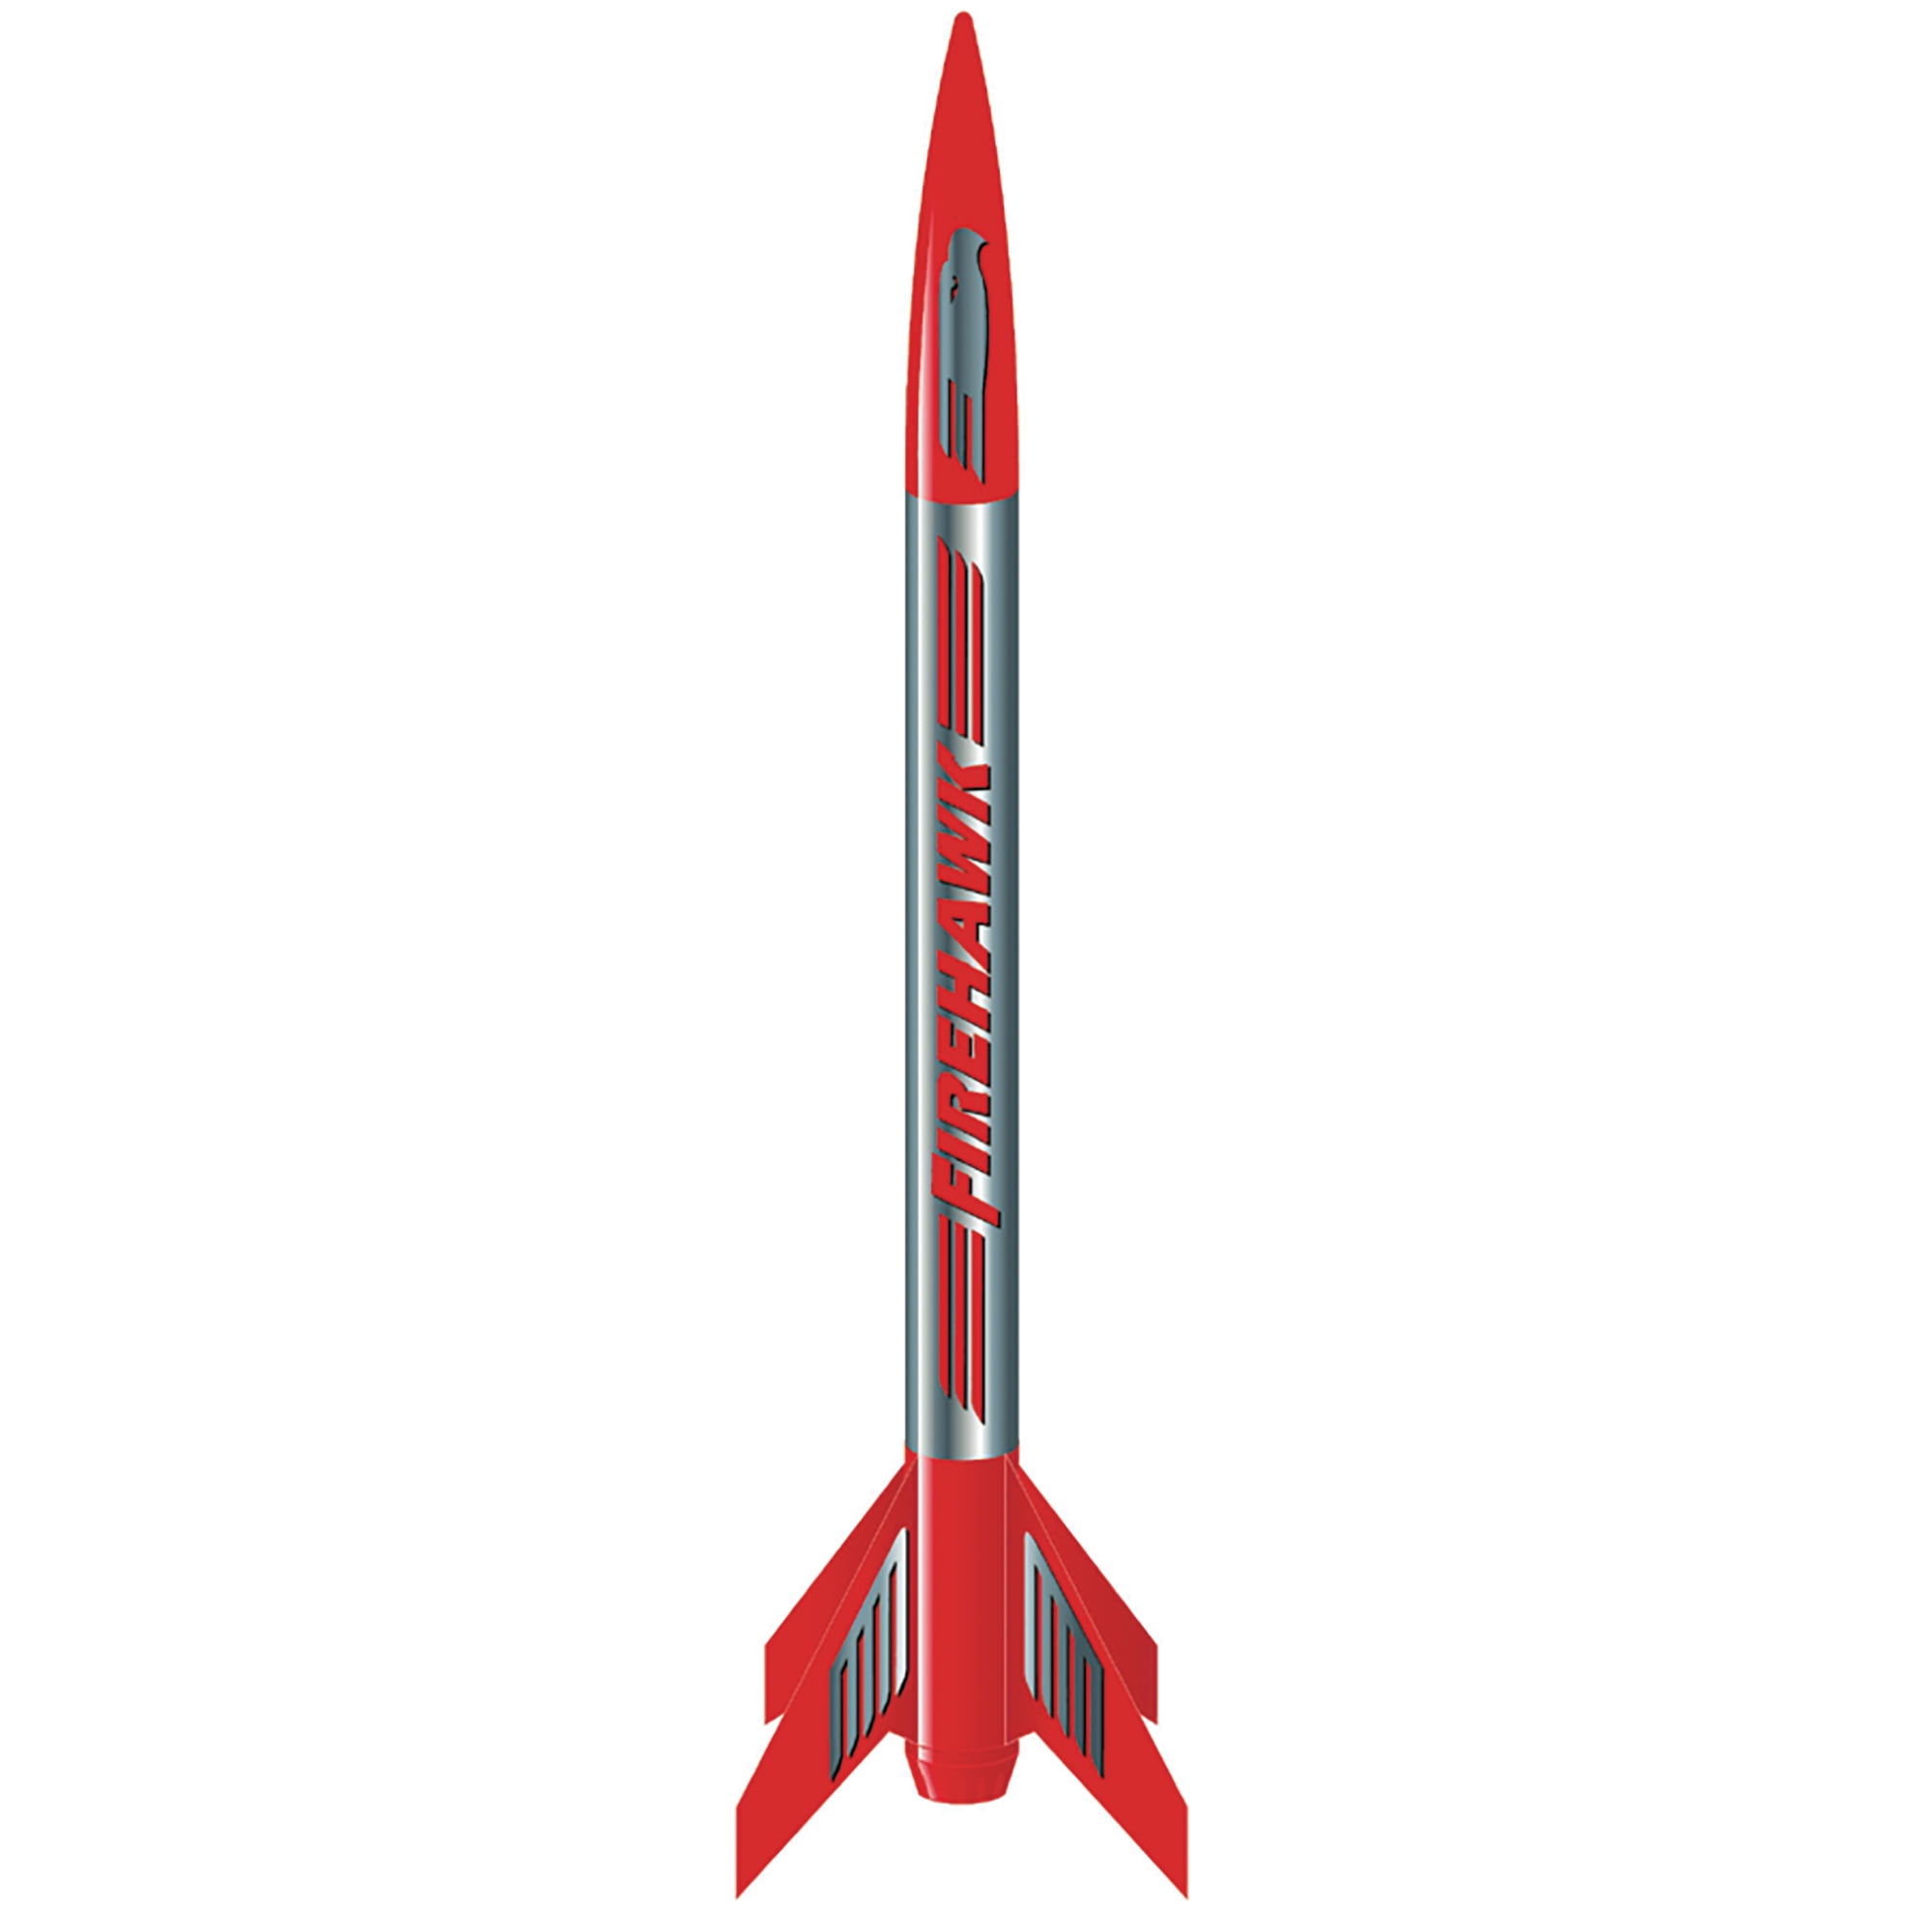 Estes Flying Model Rocket Kit Boxed Athena  2452 